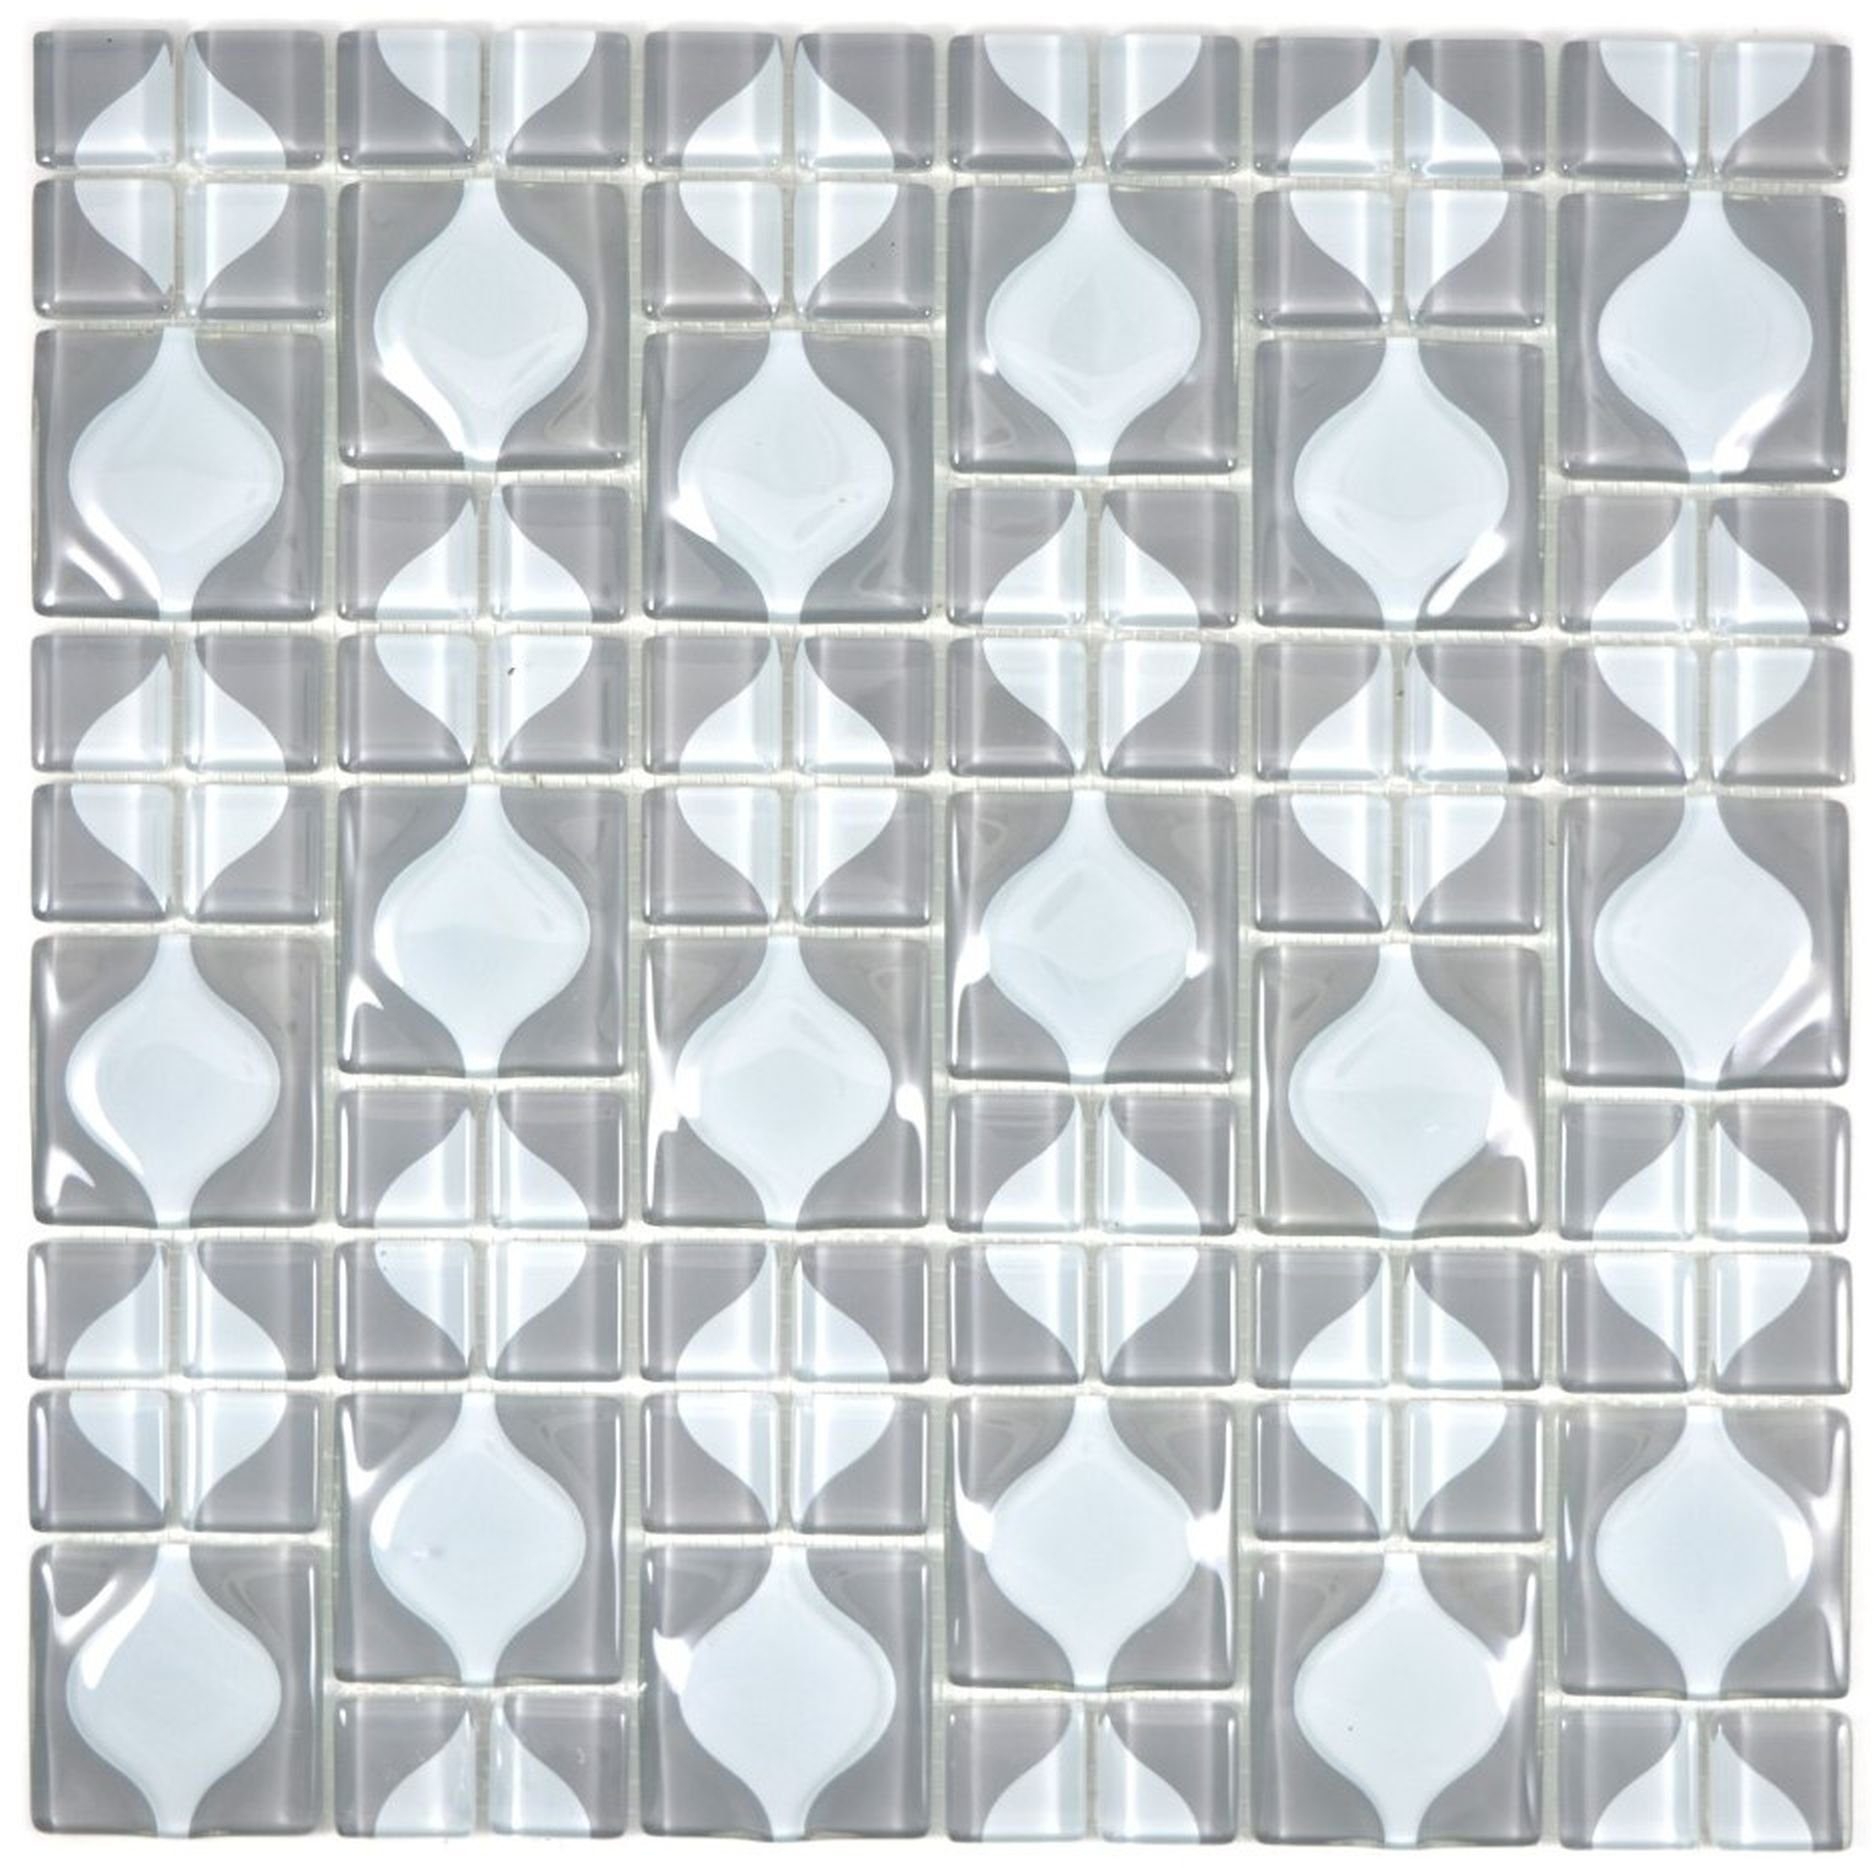 Mosani Mosaikfliesen Glasmosaik Mosaikfliesen 3D grau Grey Dot Design BAD WC